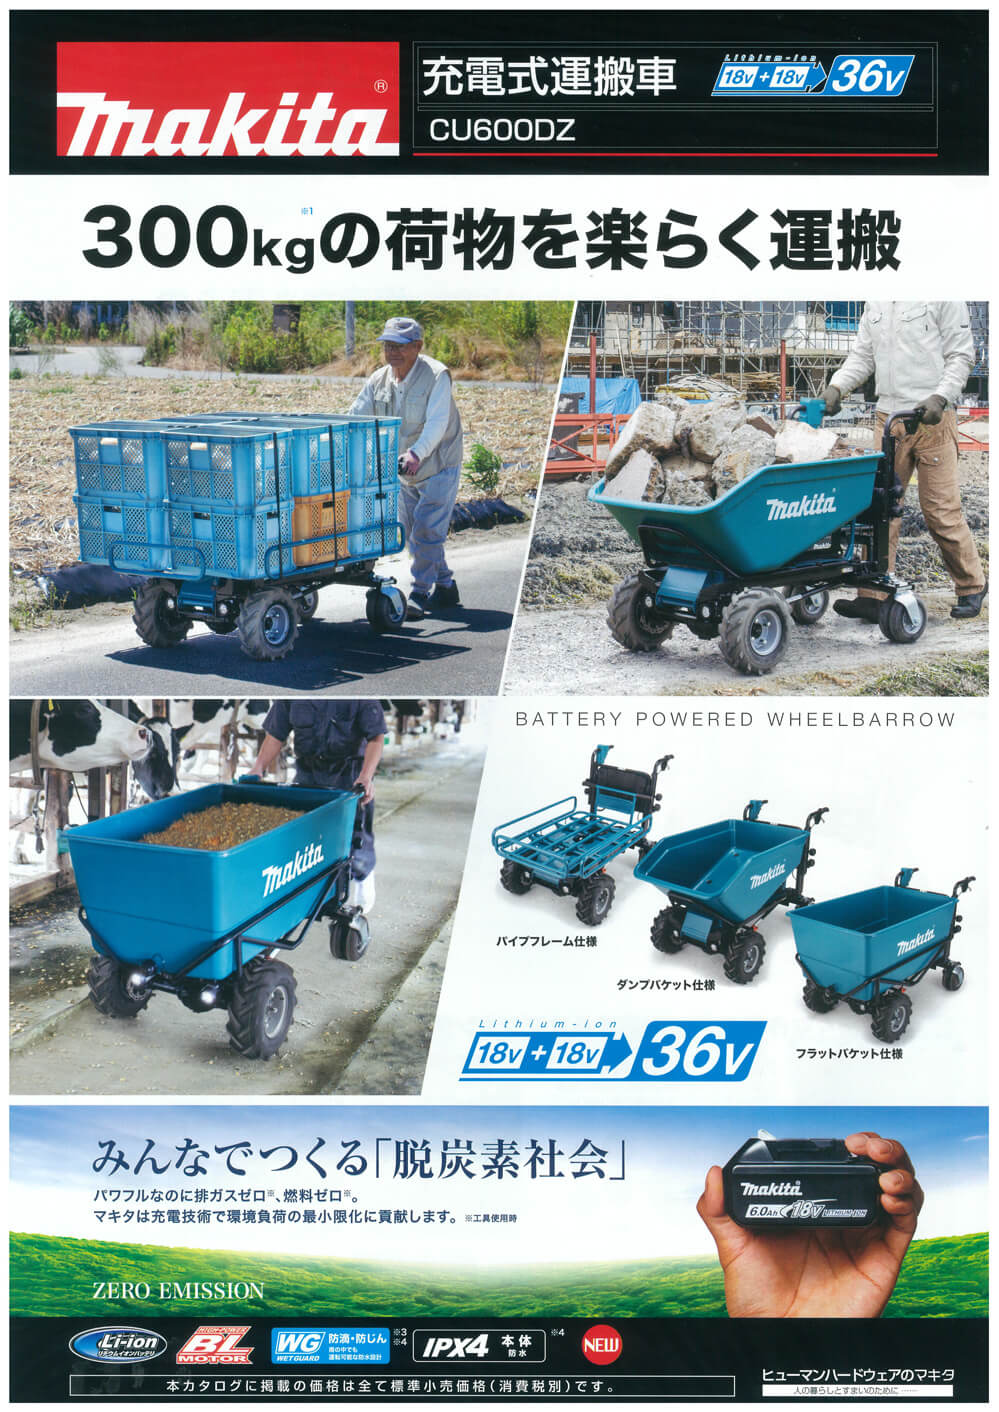 マキタ 充電式運搬車用 パイプフレームセット品A-65470 - 2